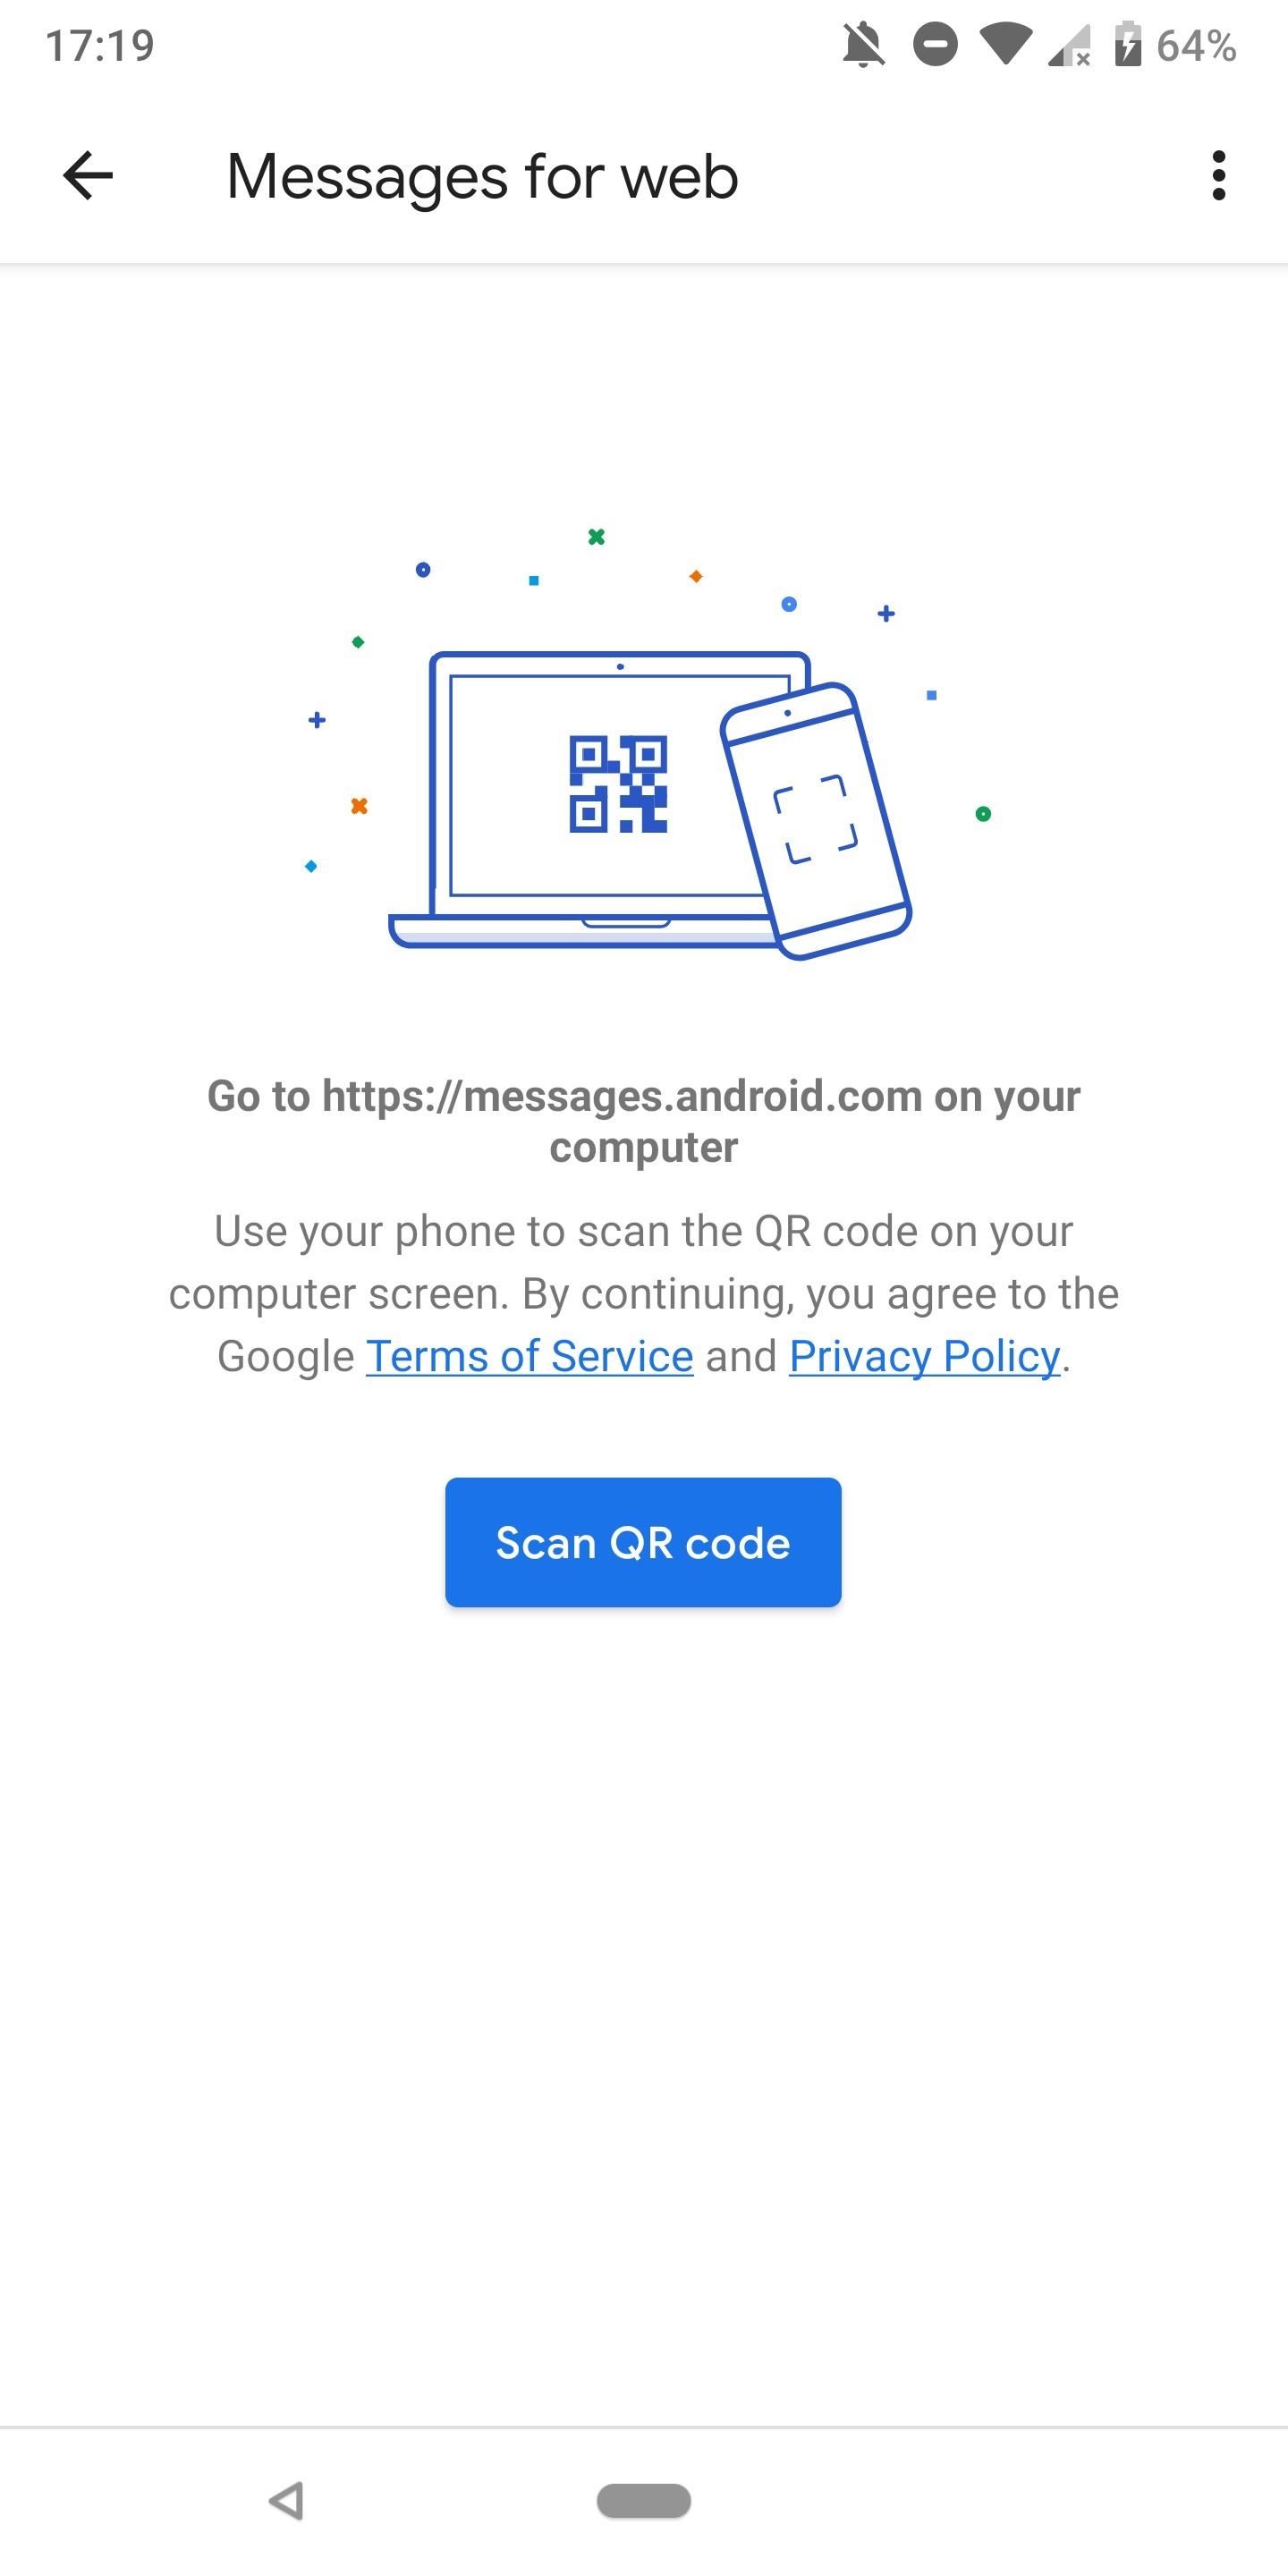 Verzend en ontvang tekst vanaf elke computer met een Android-bericht